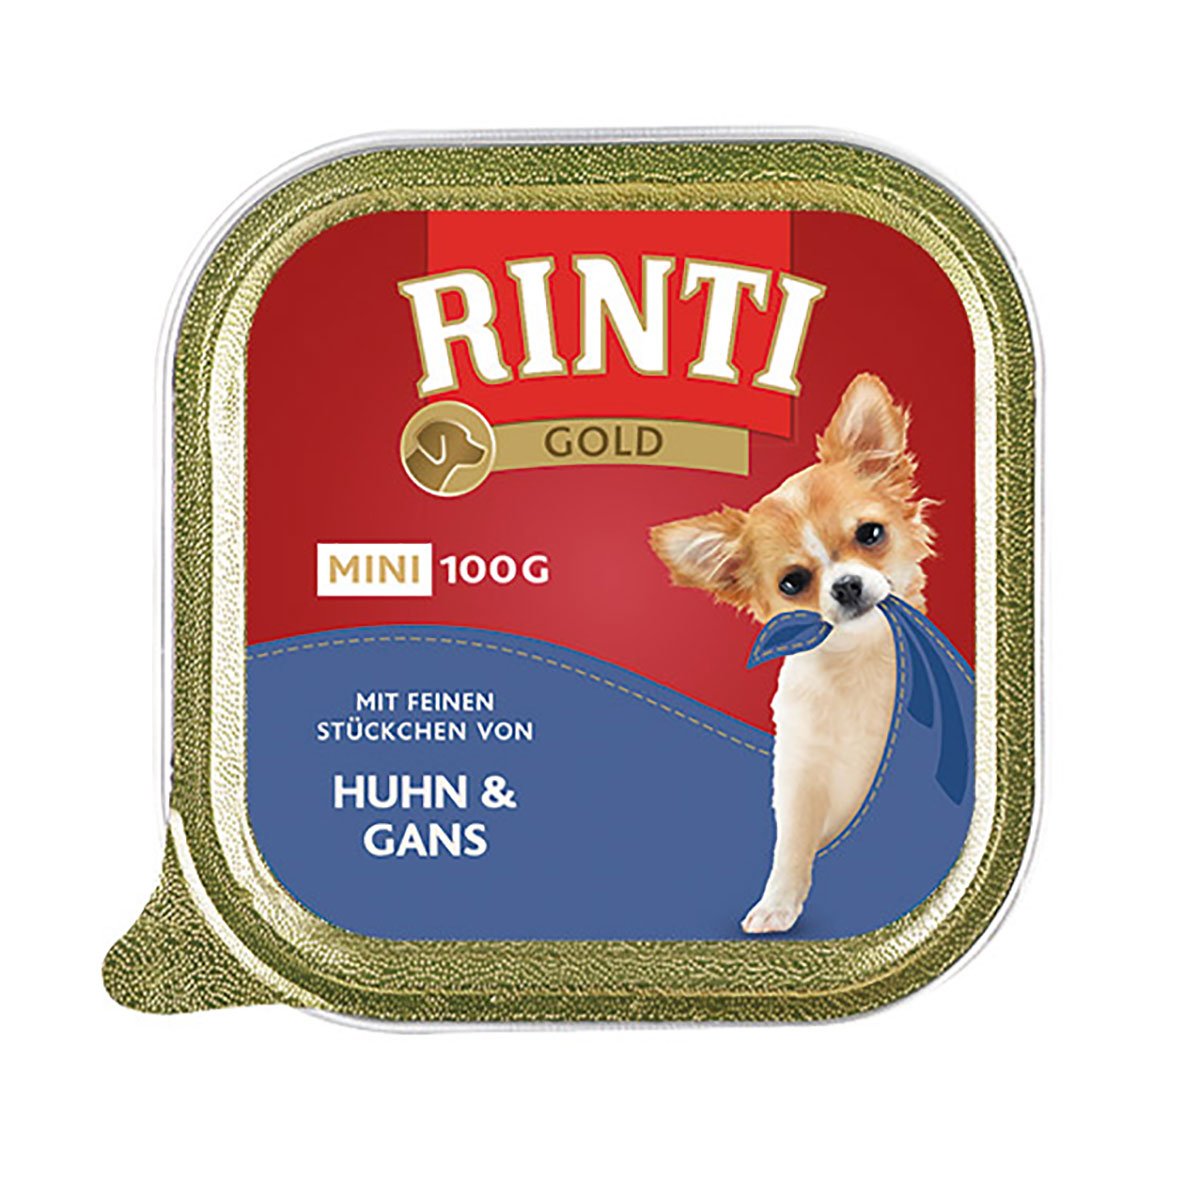 Rinti Gold Mini feine Stückchen von Huhn & Gans 16x100g